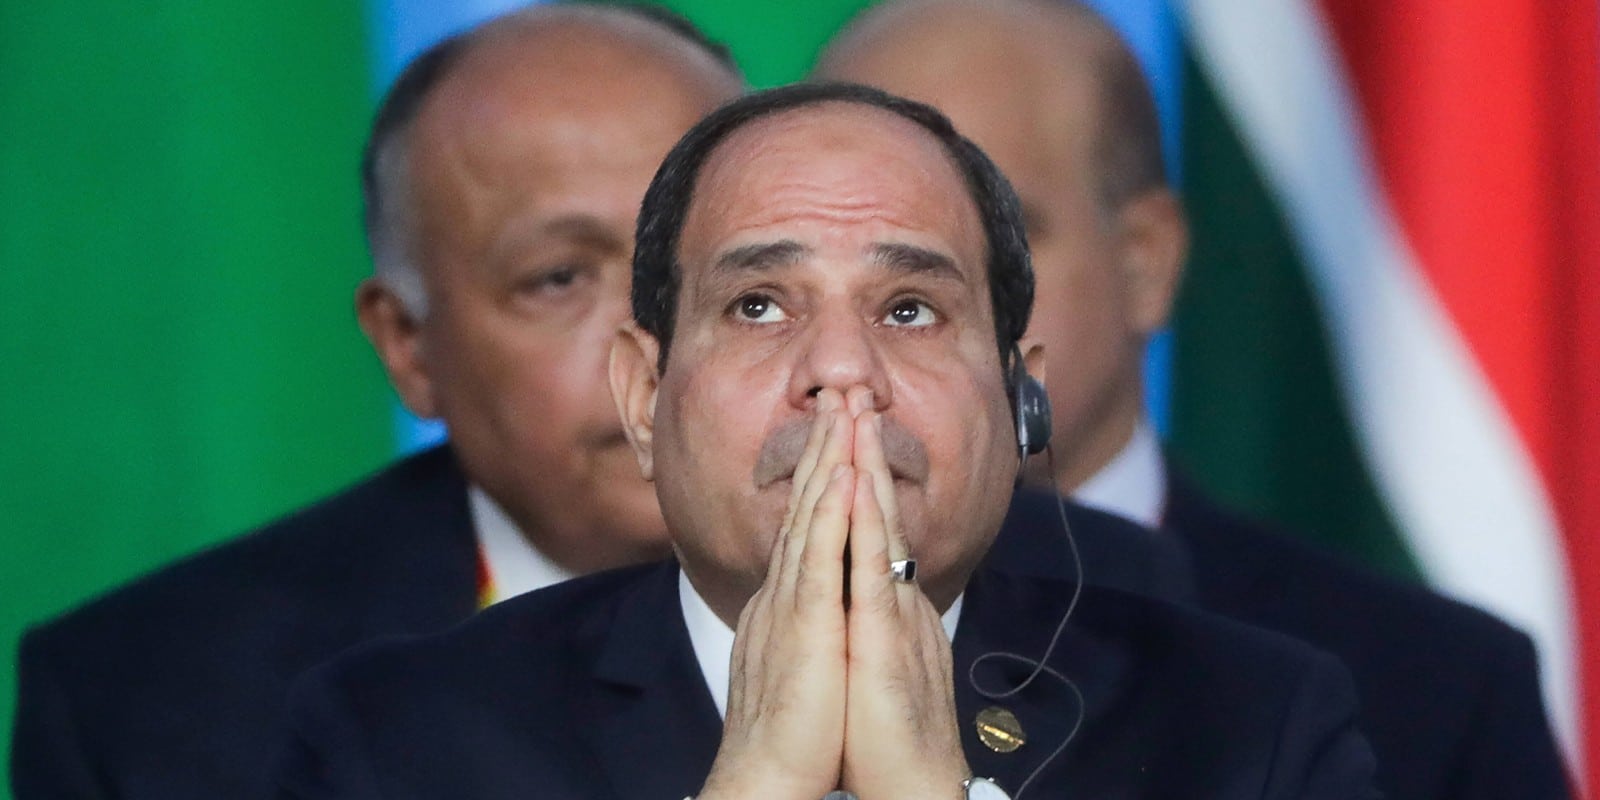 Egypt's President Abdel Fattah el-Sisi